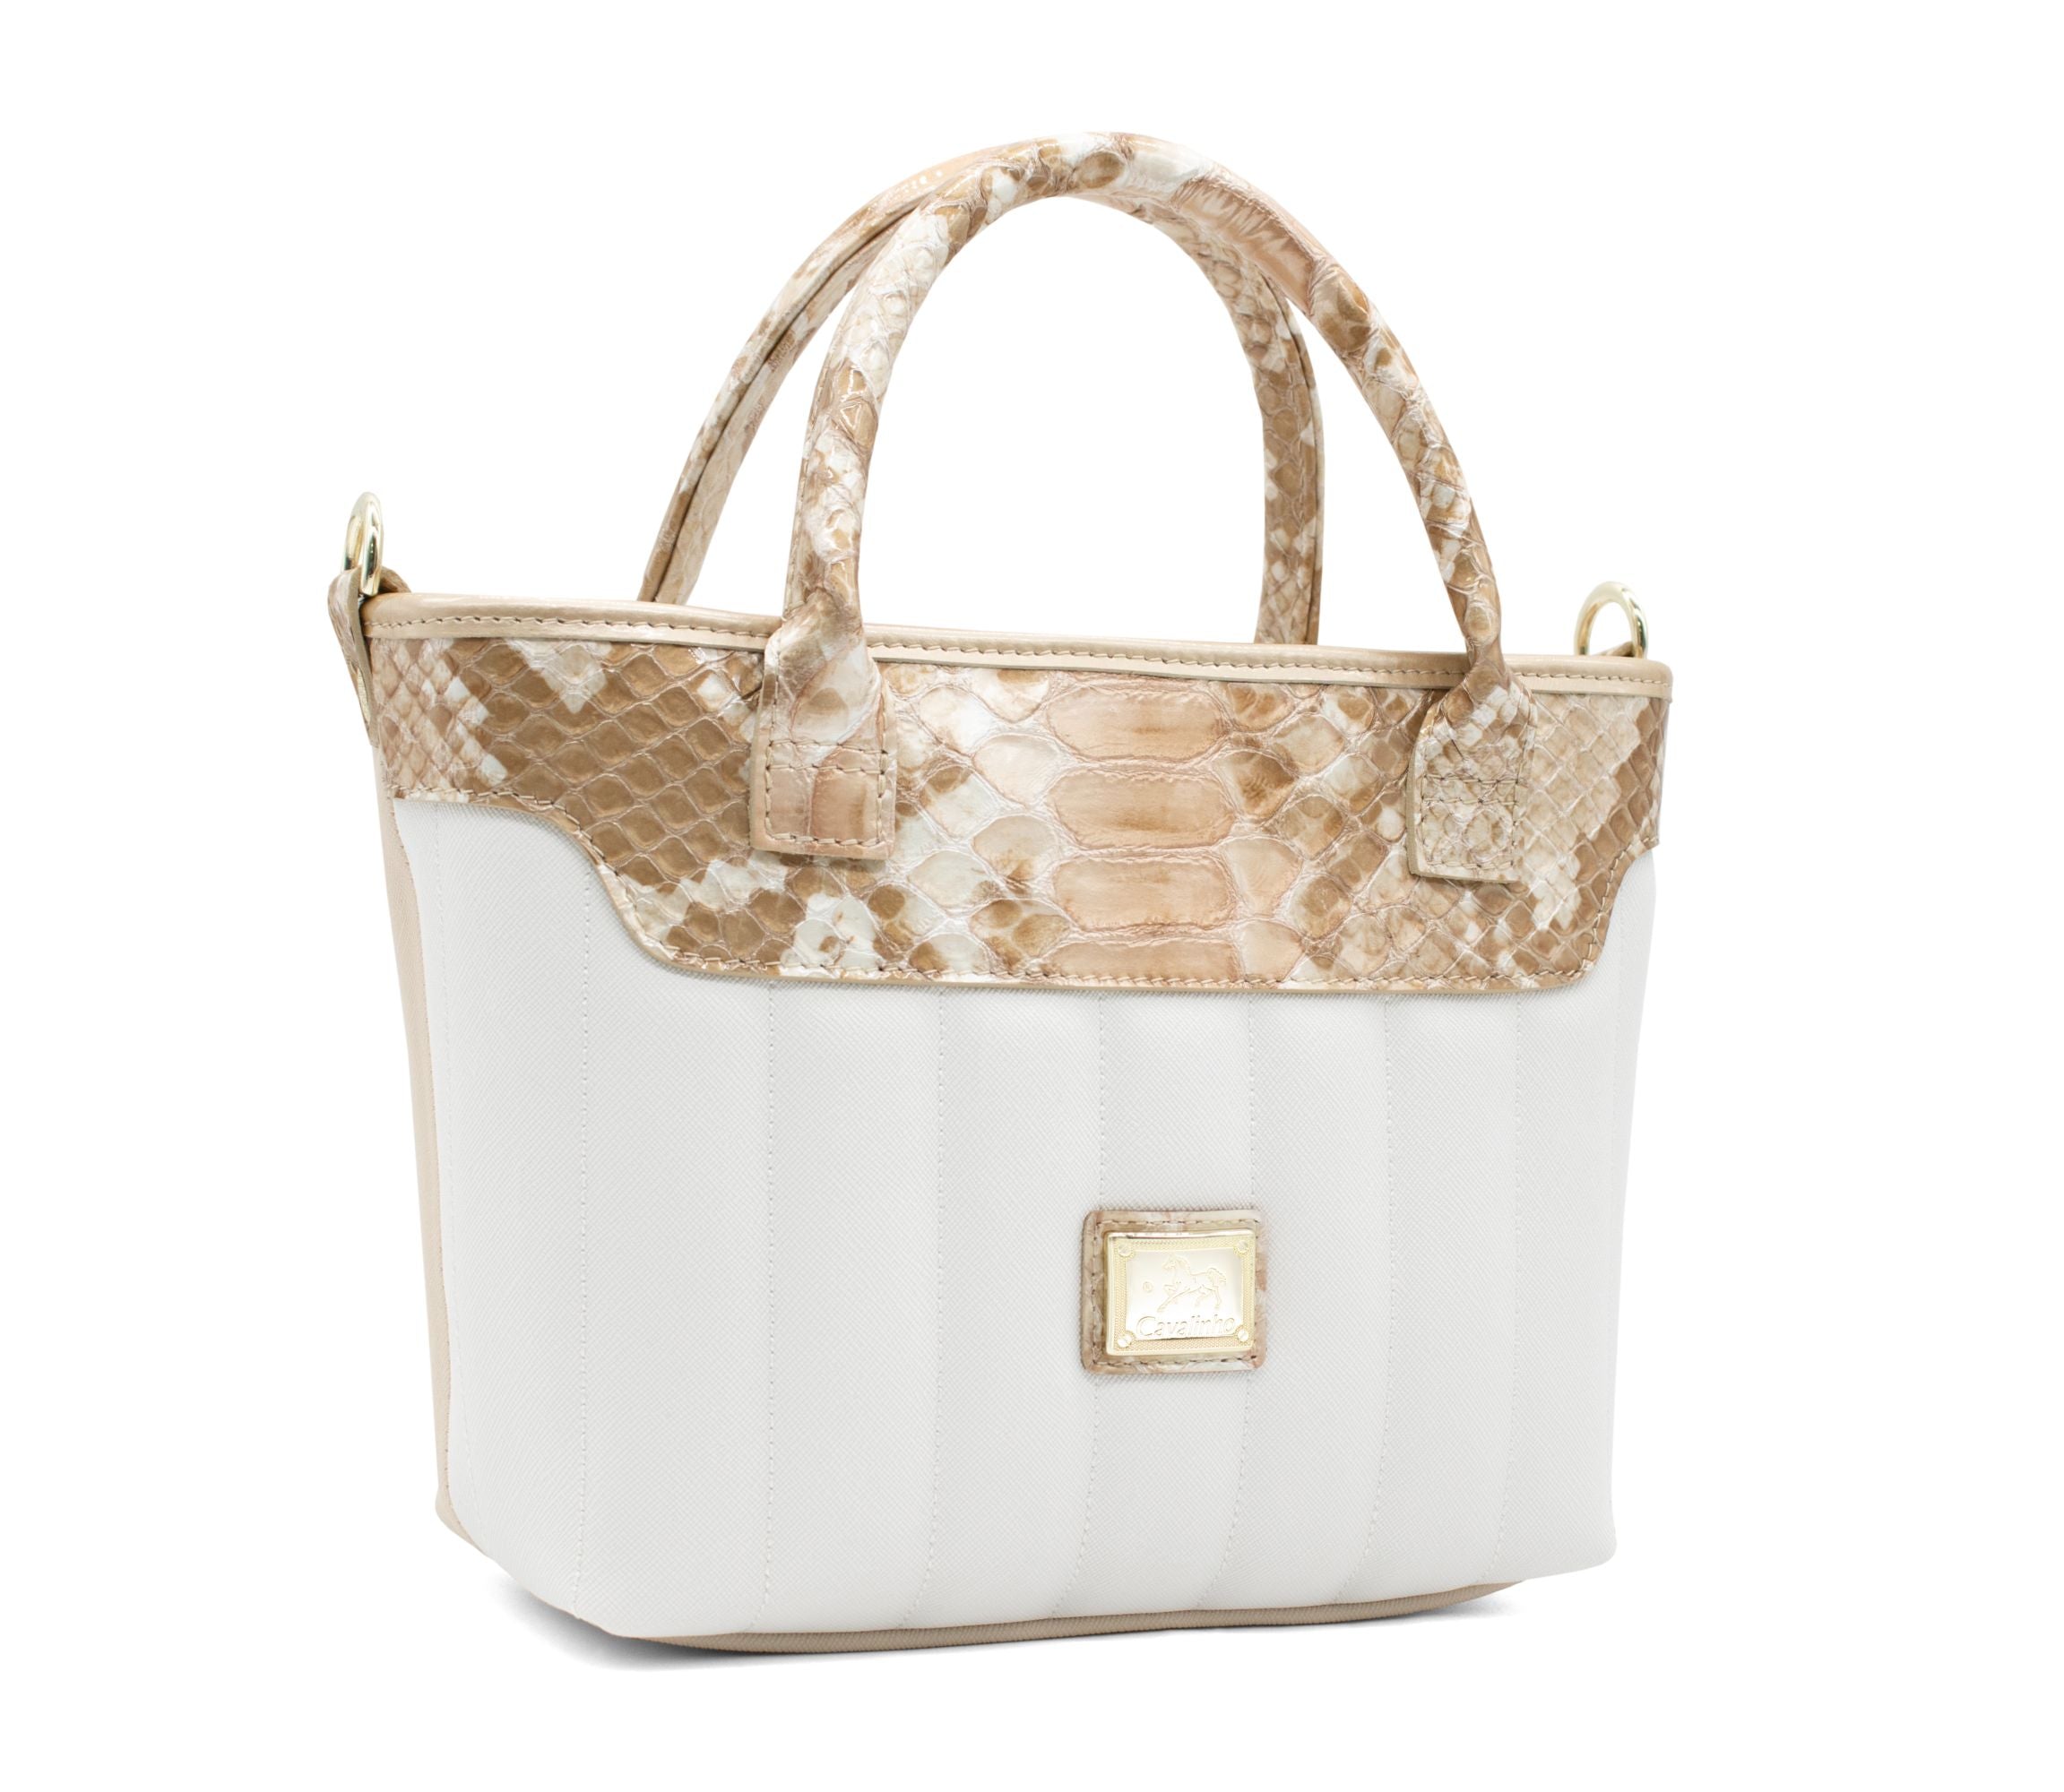 Cavalinho Grace Mini Handbag Bag SKU 18250243.05 #color_Beige / White